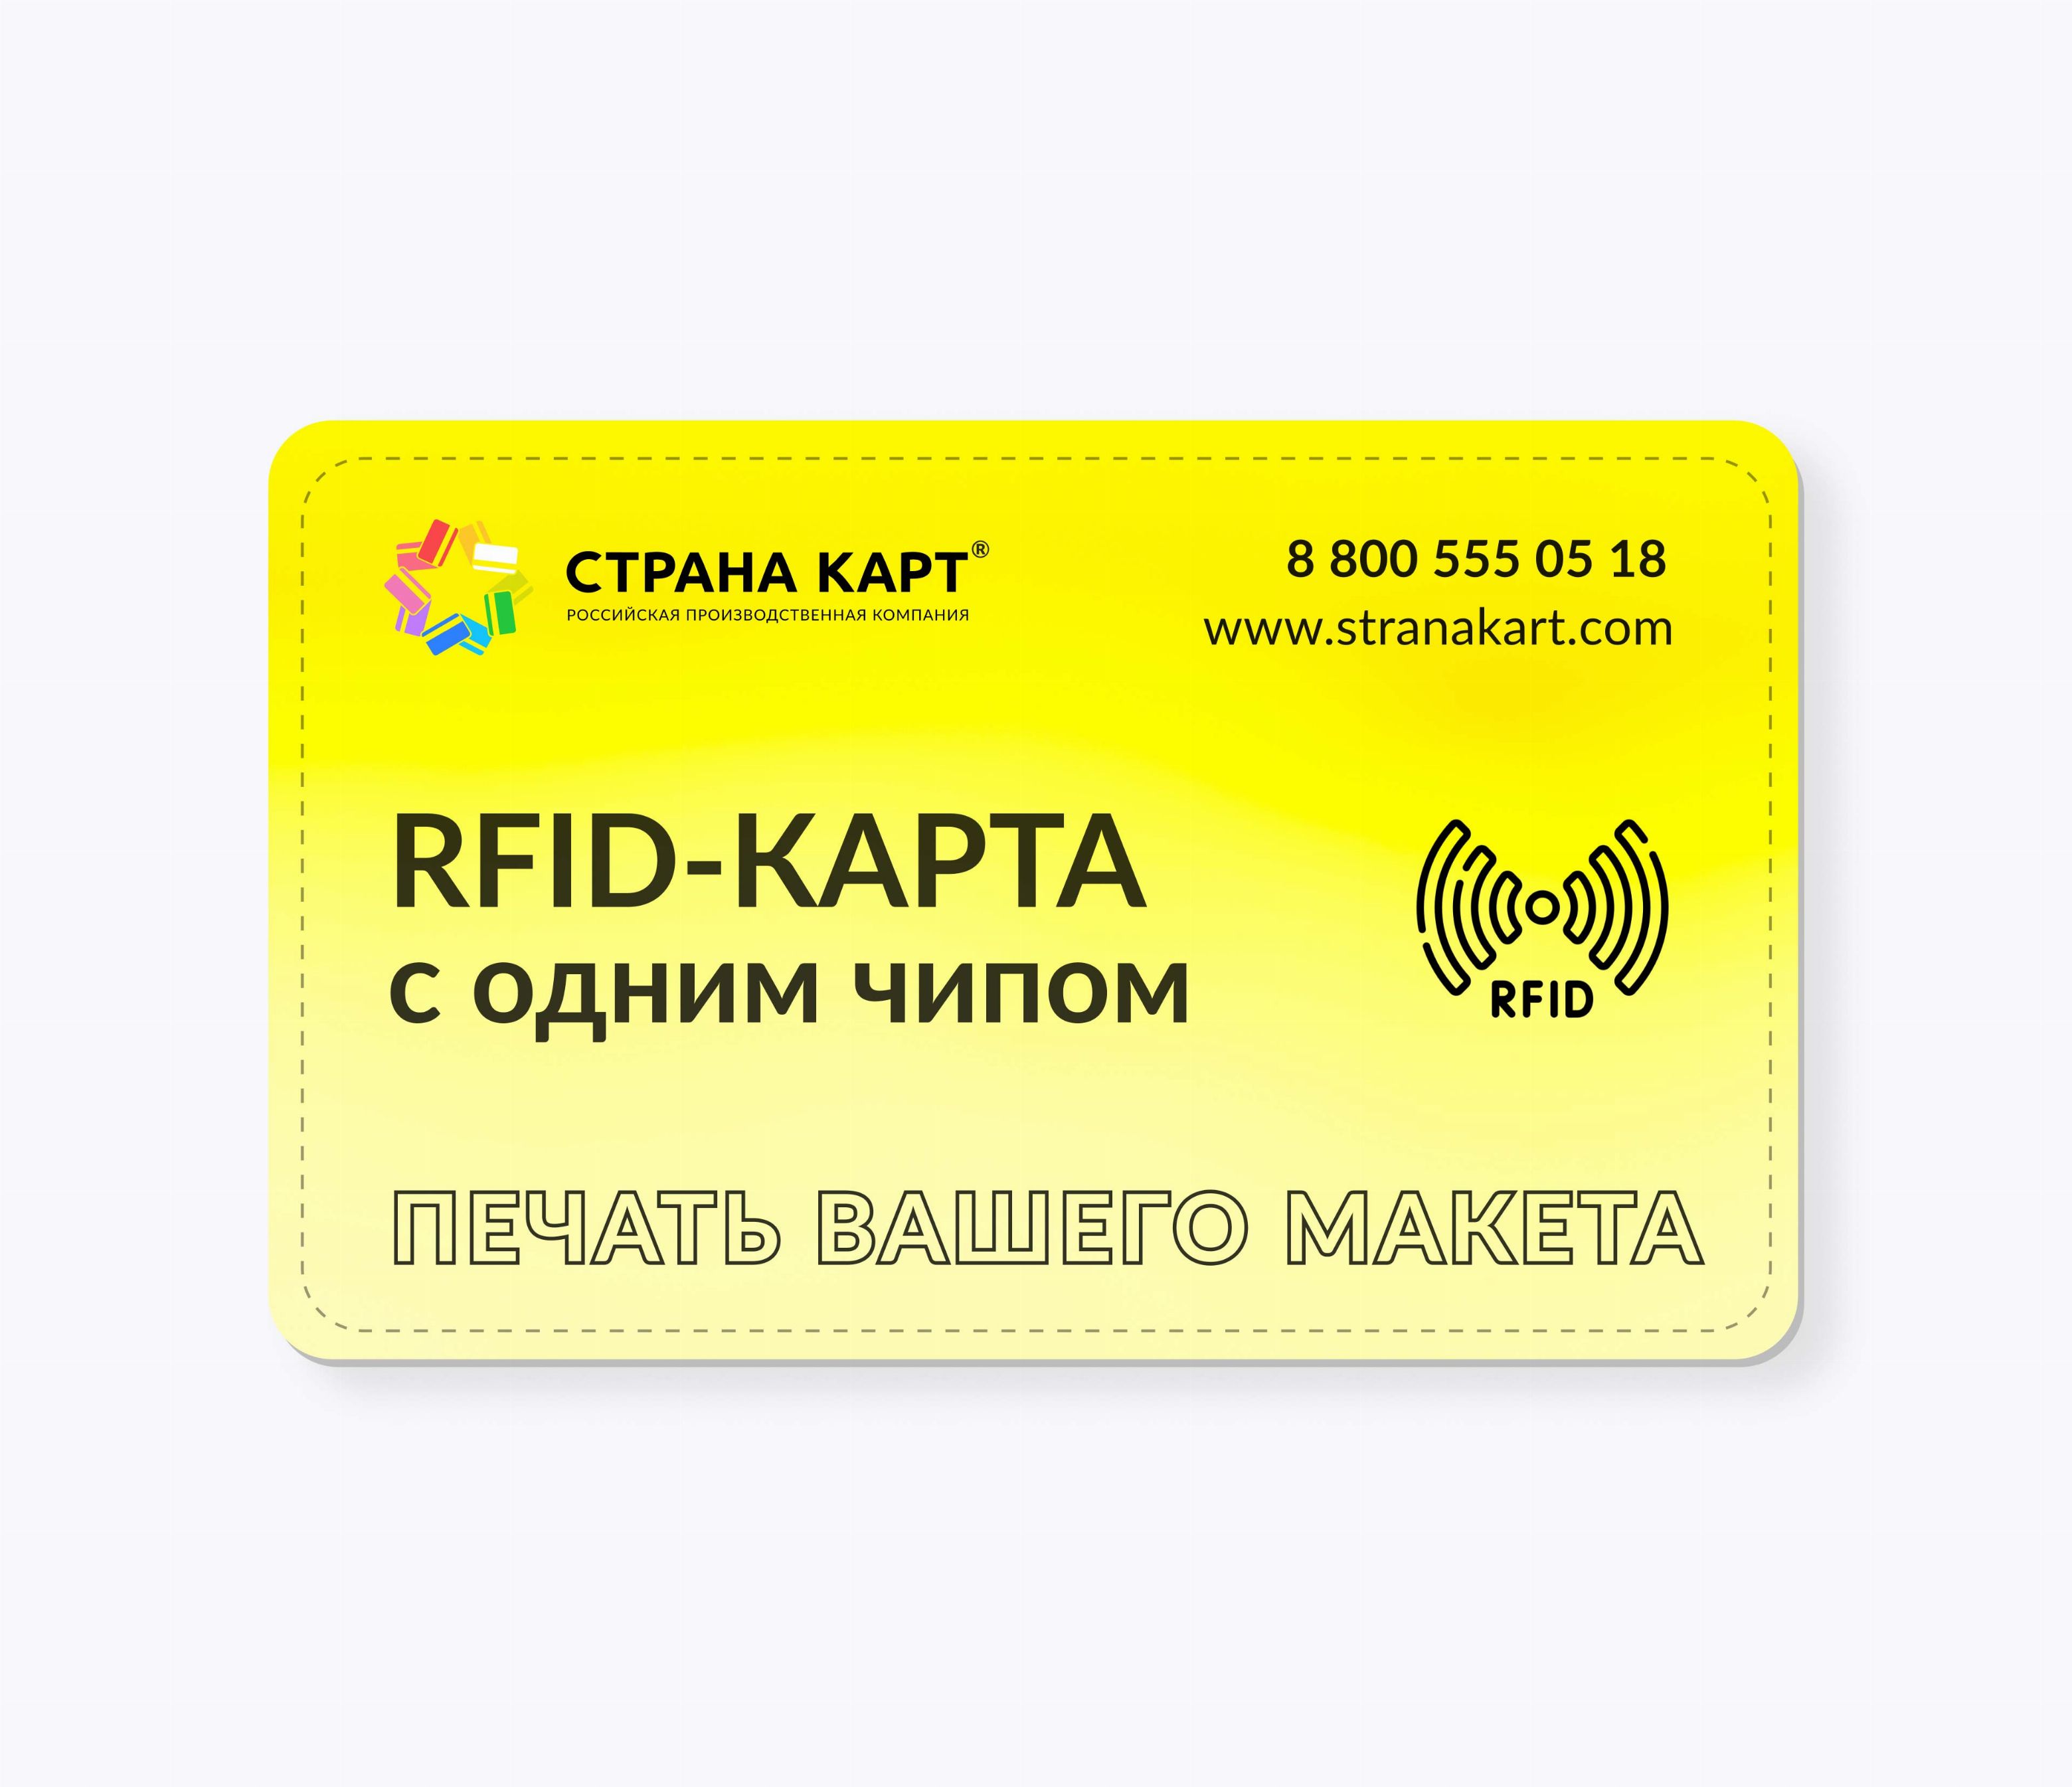 RFID-карты с чипом NXP ICODE SLI печать вашего макета RFID-карты с чипом NXP ICODE SLI